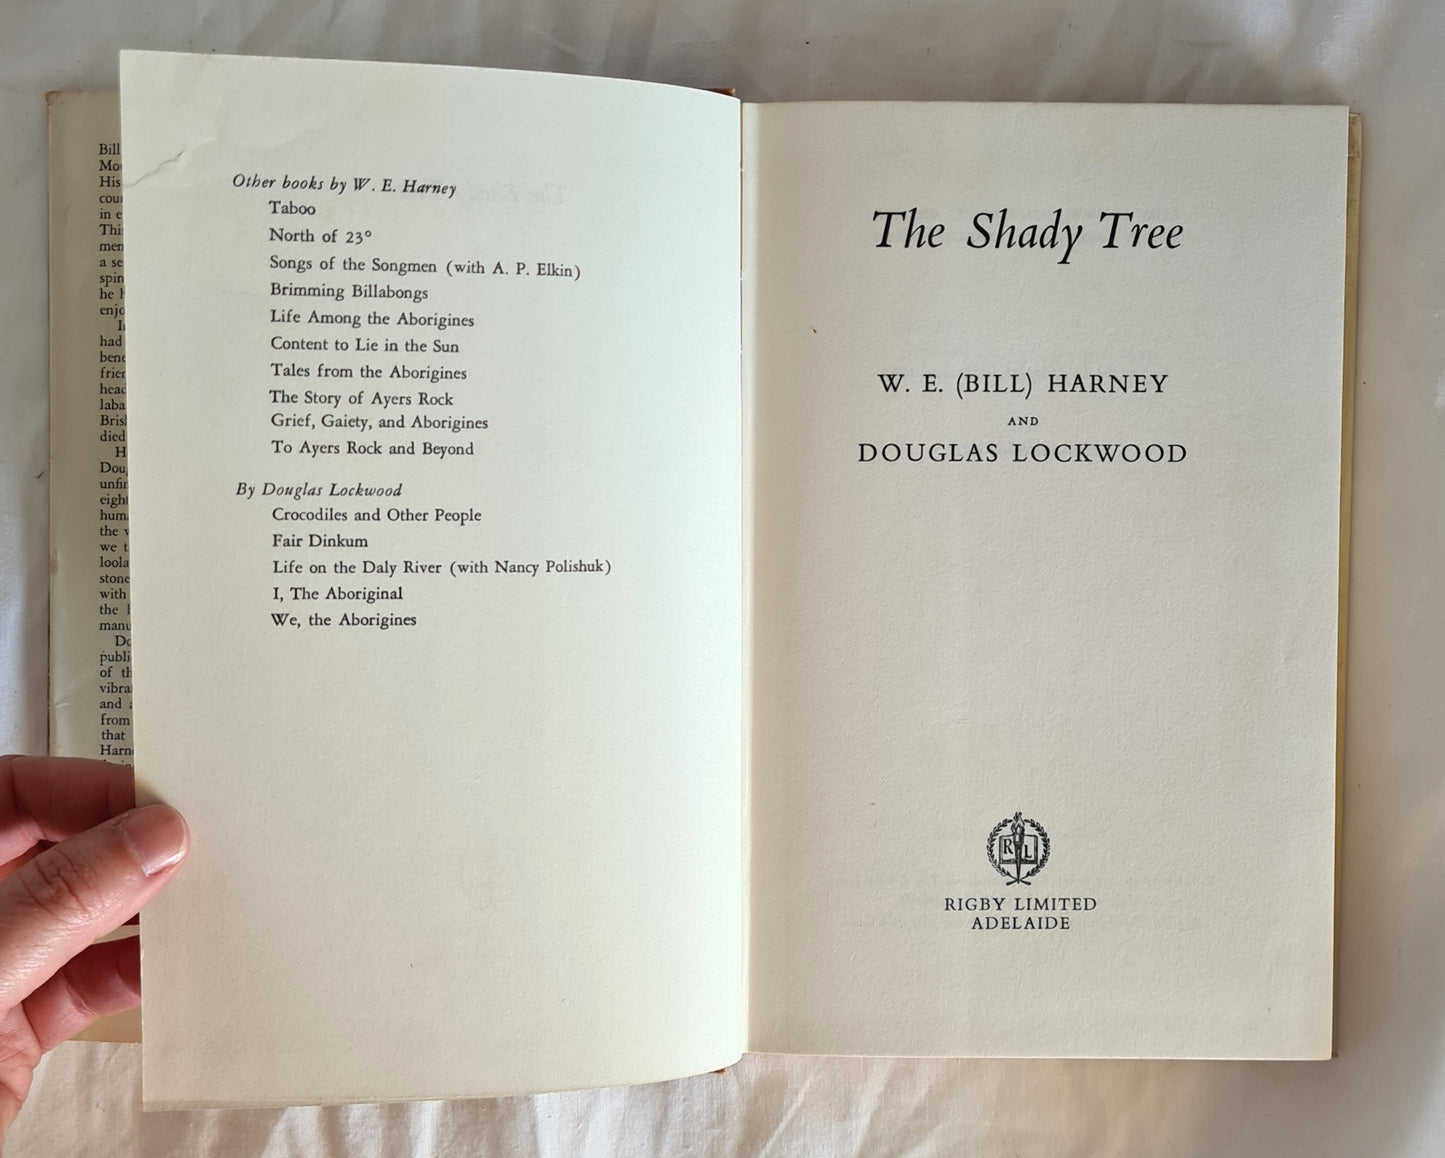 The Shady Tree by W. E. (Bill) Harney and Douglas Lockwood